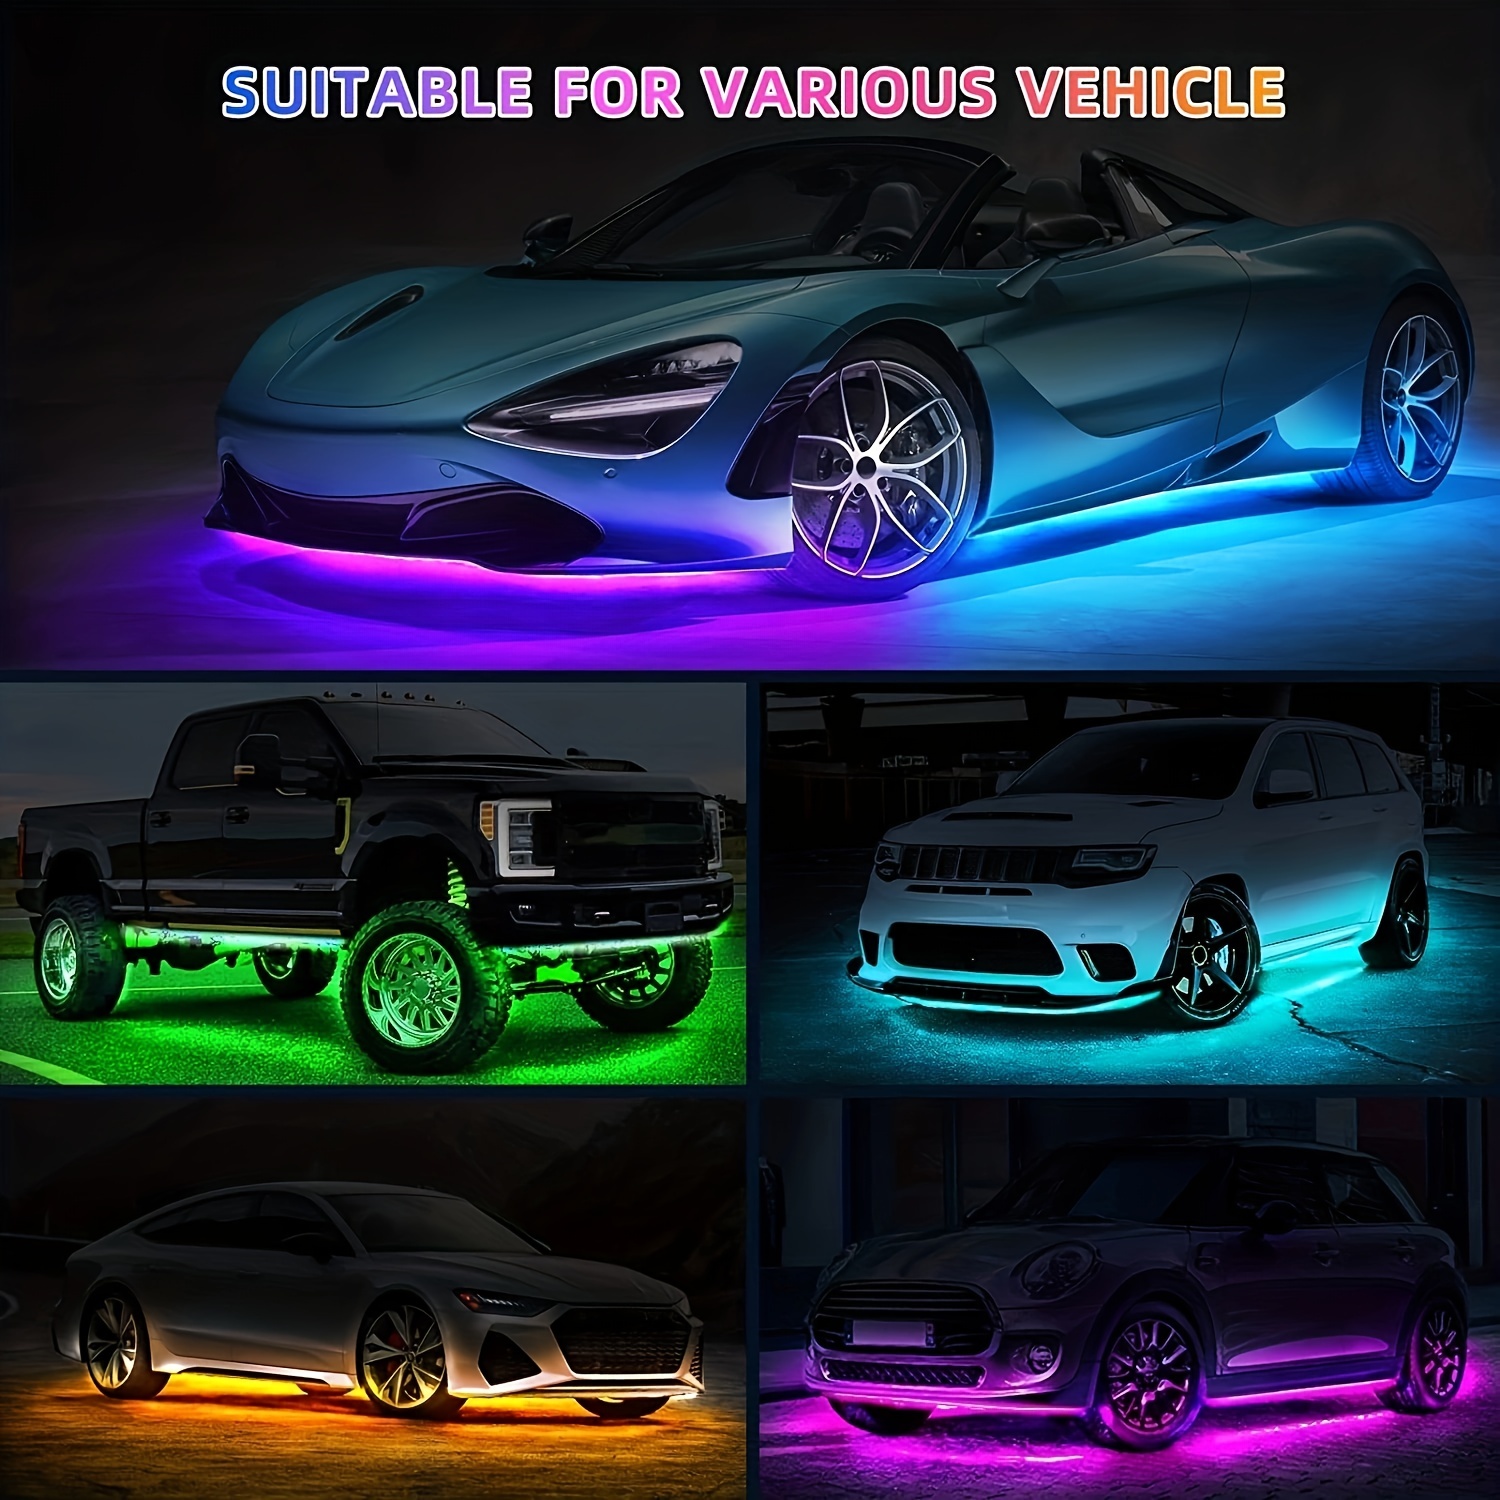 Acheter 12 lumières LED (4 pièces) colorées pour intérieur de voiture,  bande lumineuse d'ambiance avec contrôle vocal/application, néon RVB,  éclairage intérieur de voiture, décoration de voiture